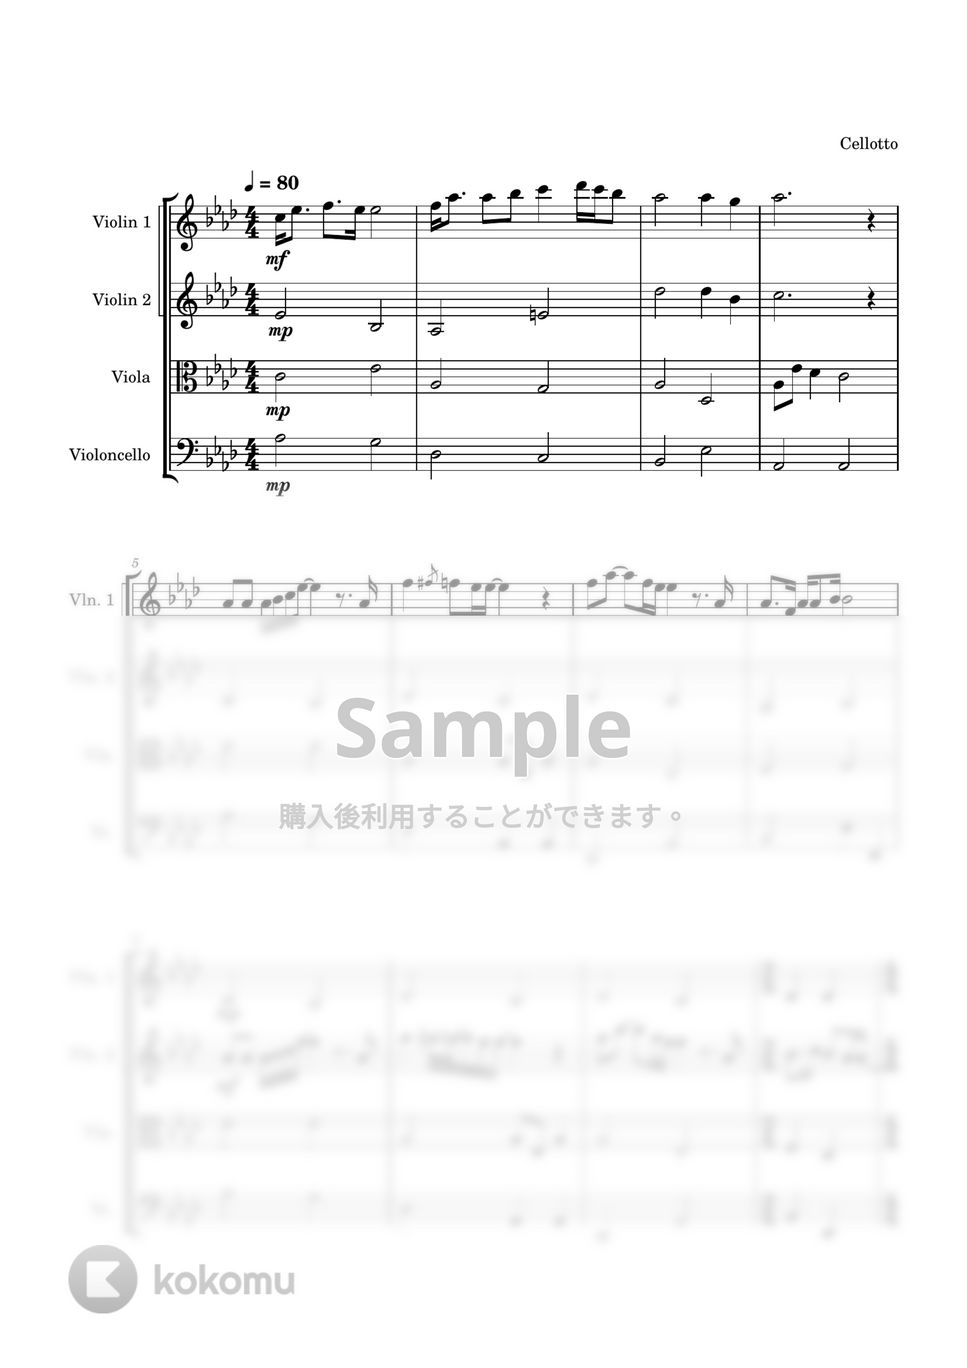 あいみょん - 裸の心 (弦楽四重奏) by Cellotto